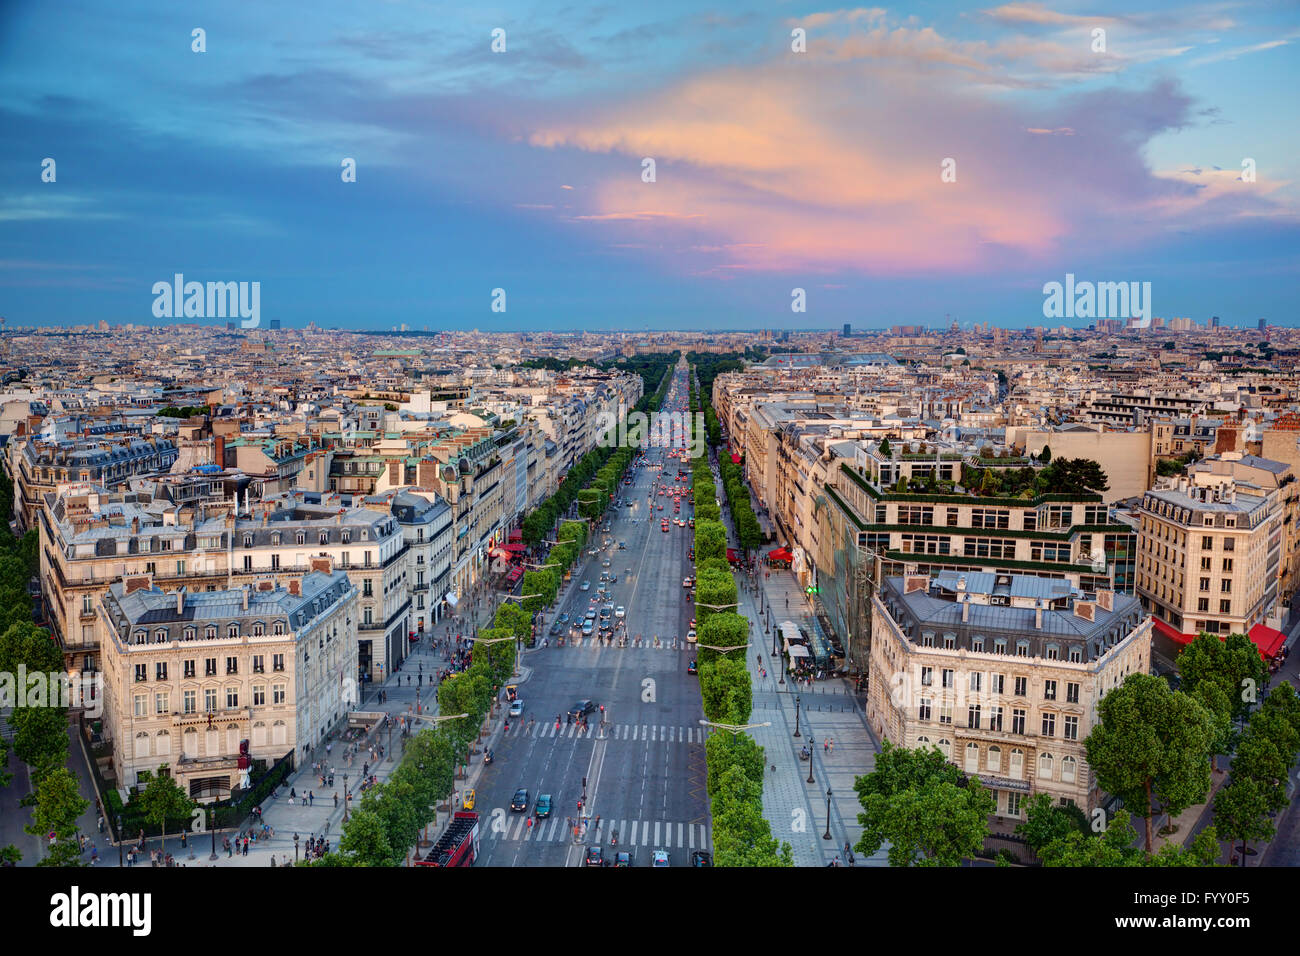 Avenue des Champs-Elysees in Paris, France Stock Photo